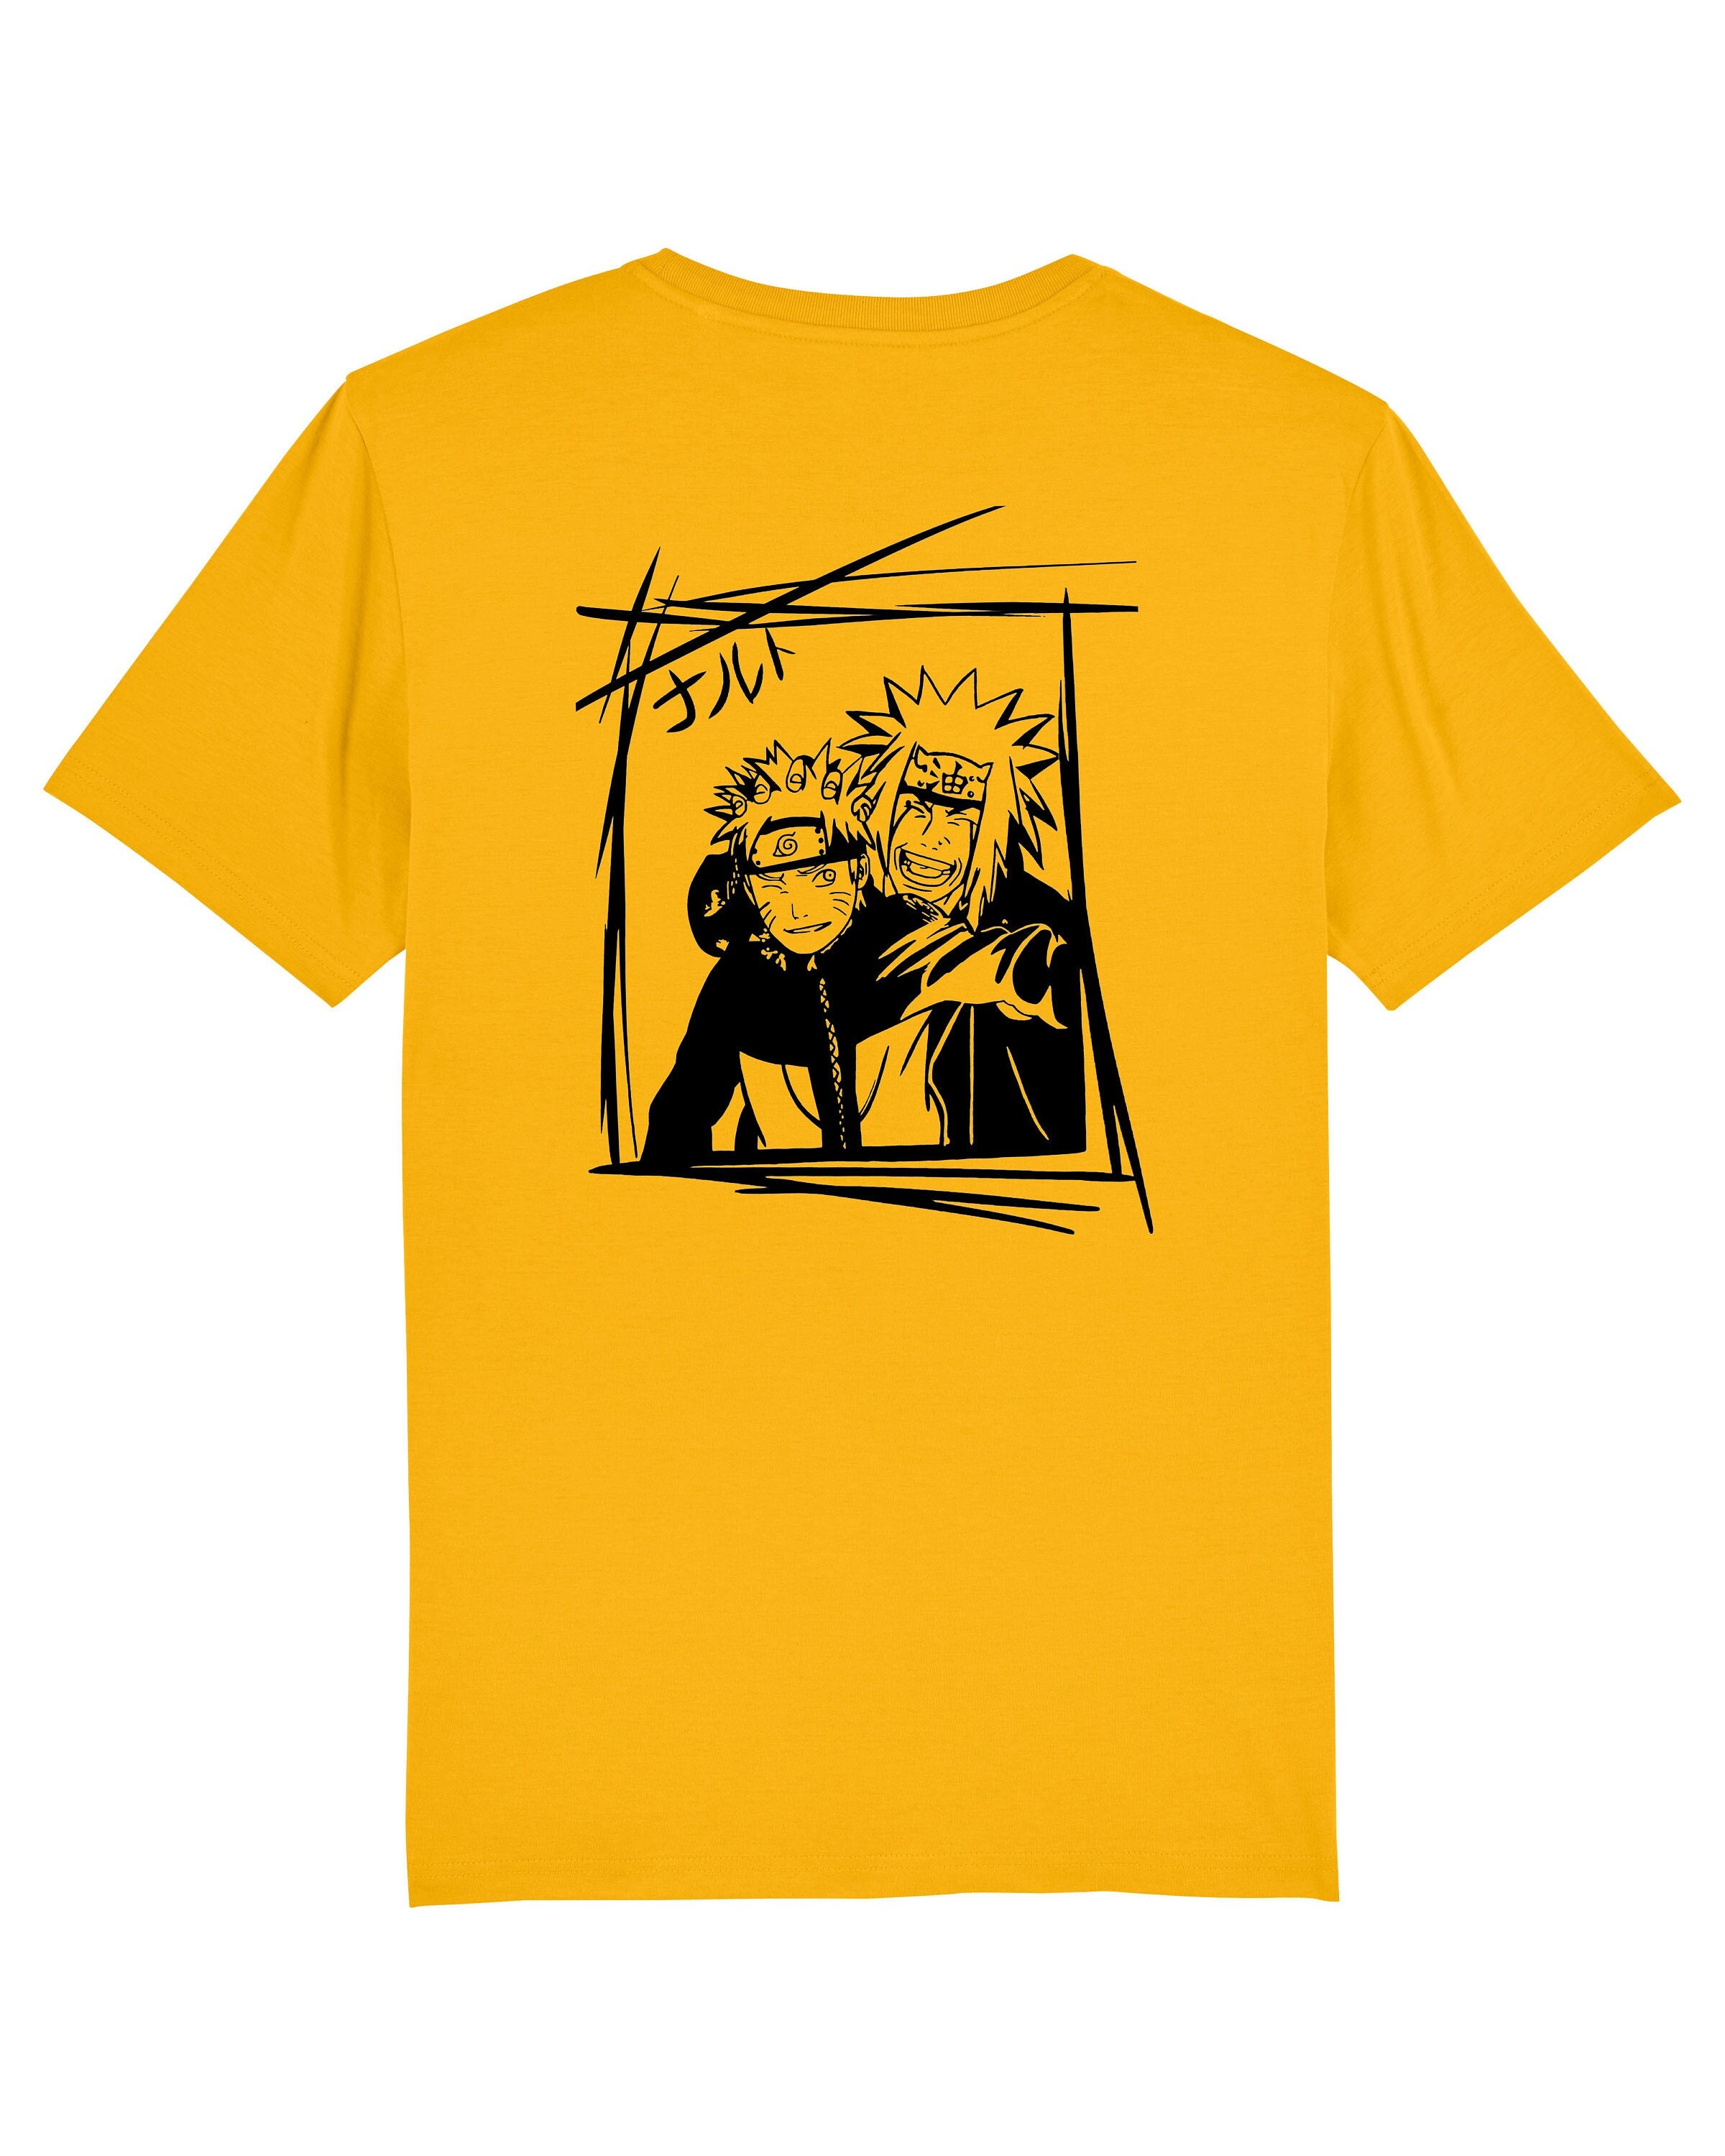 Naruto Uzumaki and Jiraiya T-shirt Naruto Shippuden Anime -